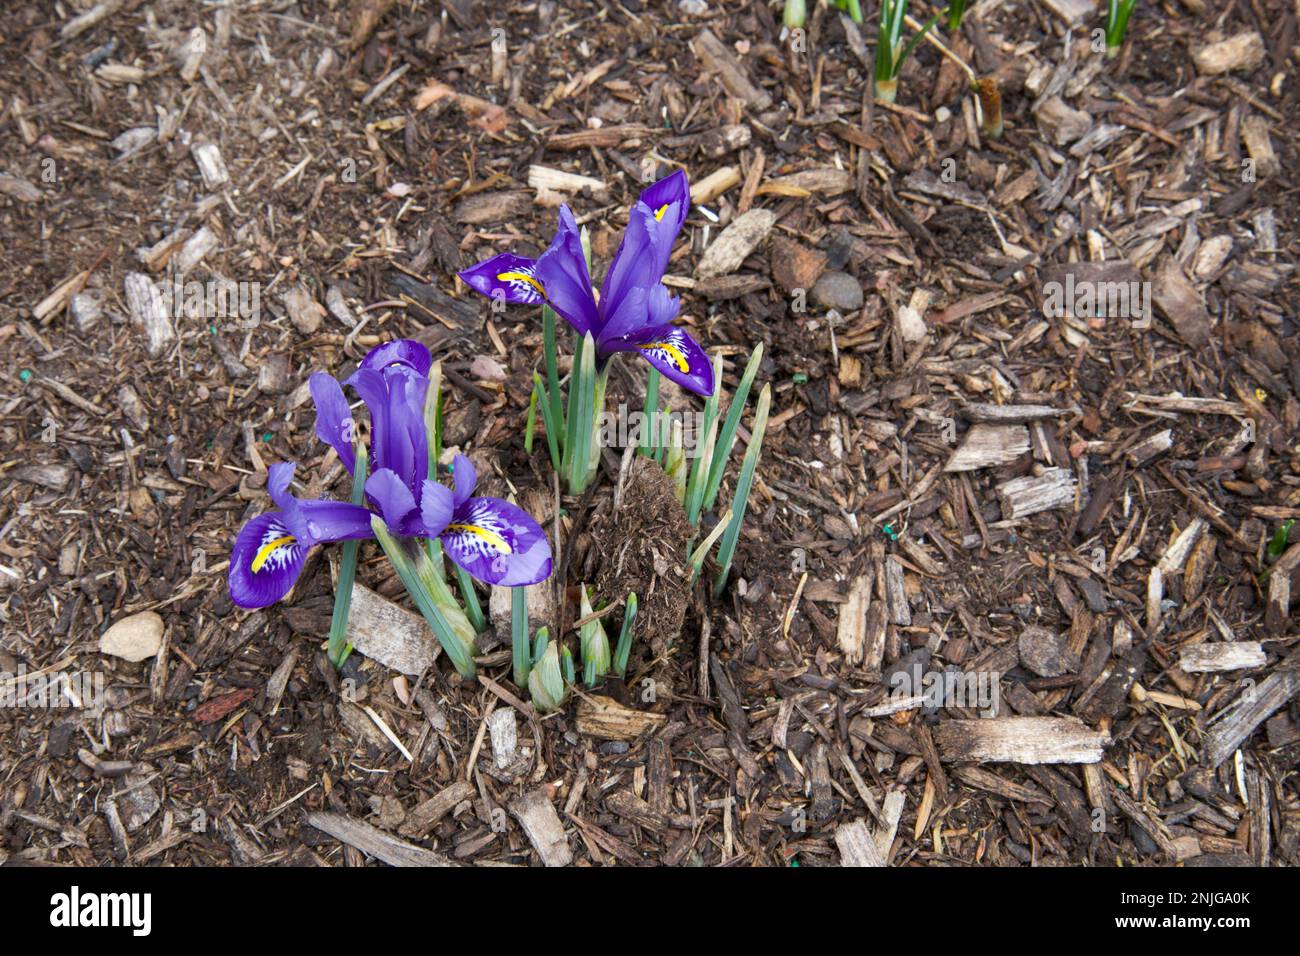 Piccolo iride viola, fiorente in mezzo al pacciame in un piccolo giardino del New England durante l'inverno. Fiori nell'angolo in basso a sinistra. Foto Stock